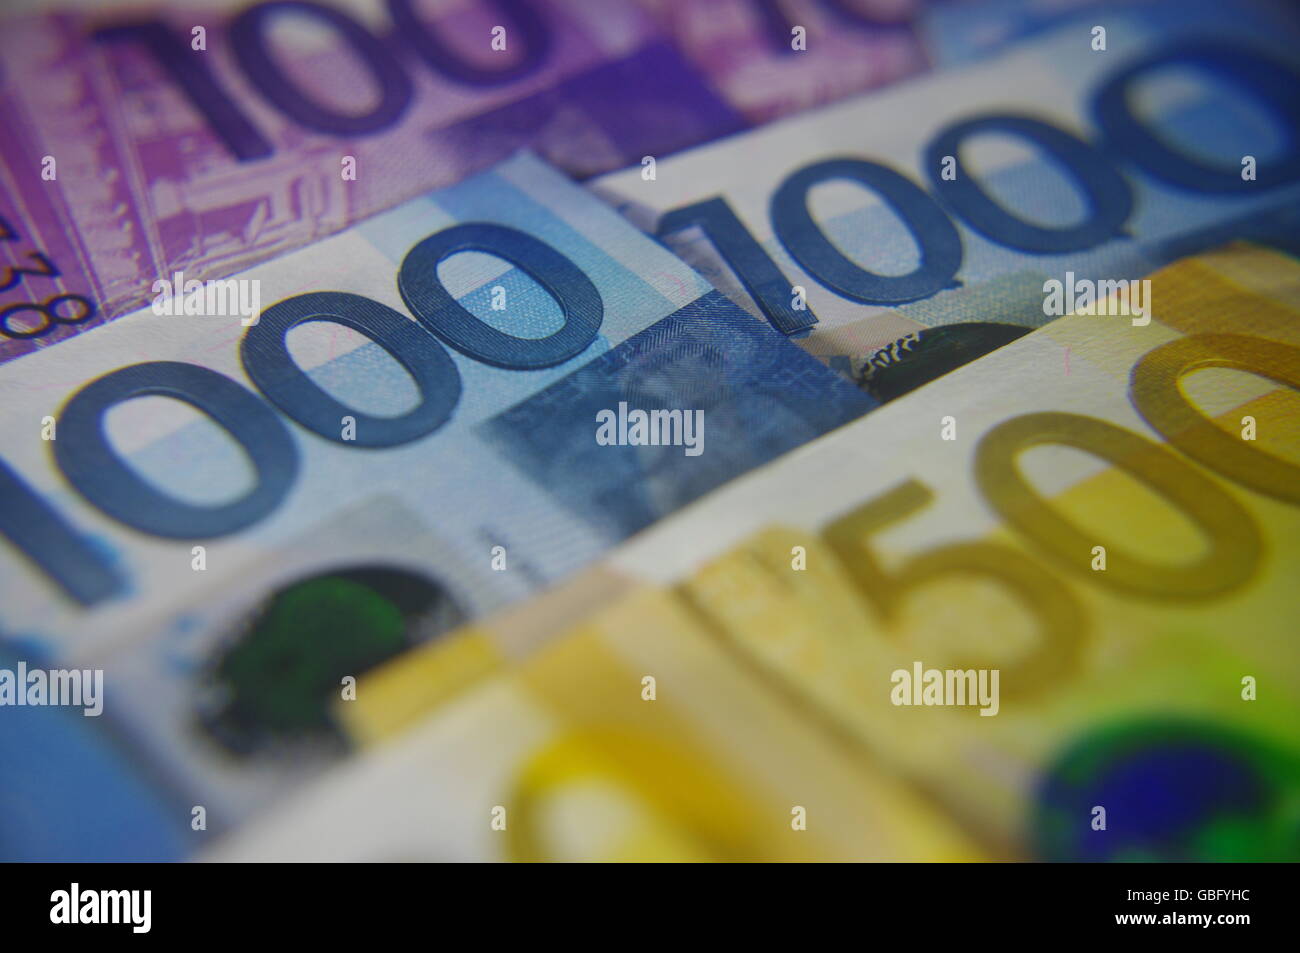 PHILIPPINE MONEY Stock Photo